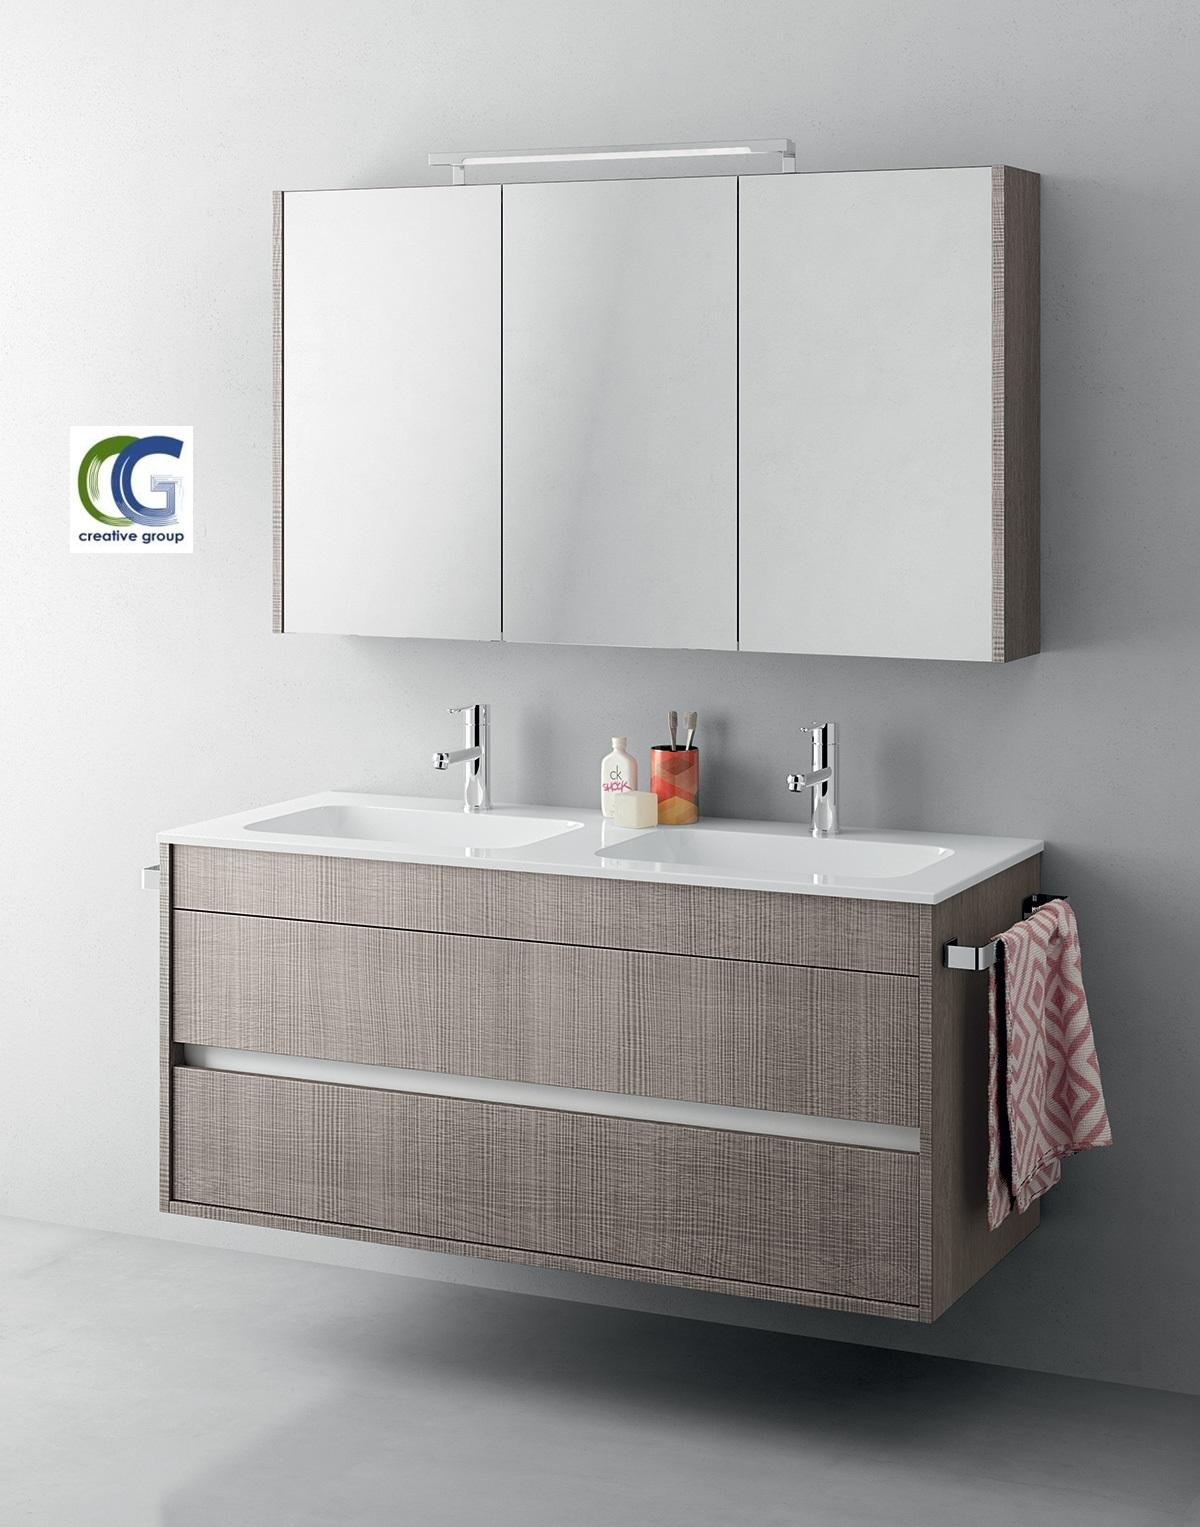 وحدة حمام 65 سم - افضل تصاميم وحدات الحمام مع شركة كرياتف  جروب 01203903309 365034668